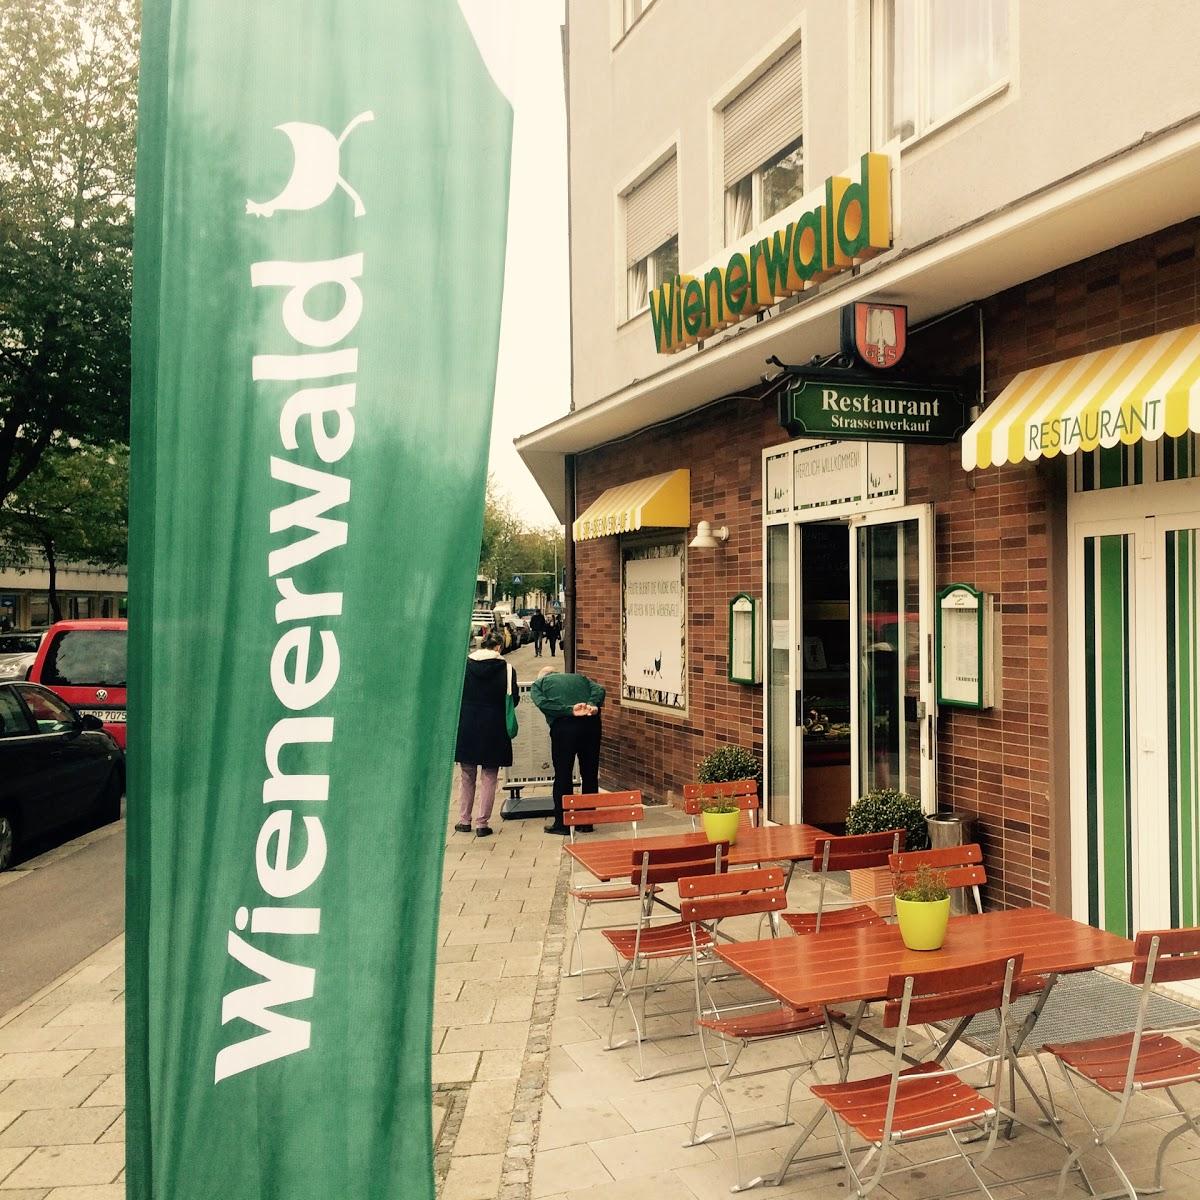 Restaurant "Wienerwald" in München